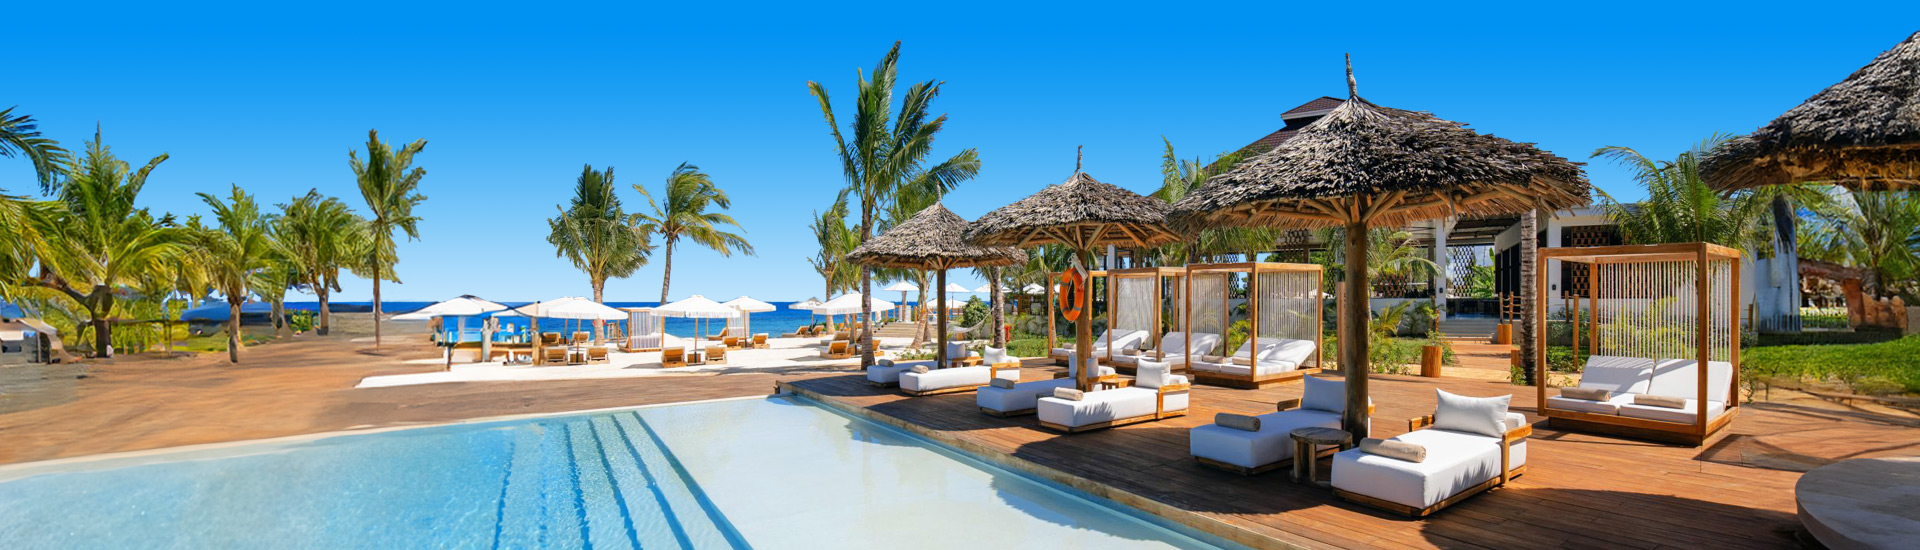 Luxe zwembad met ligbedjes en parasols op een all inclusive vakantie